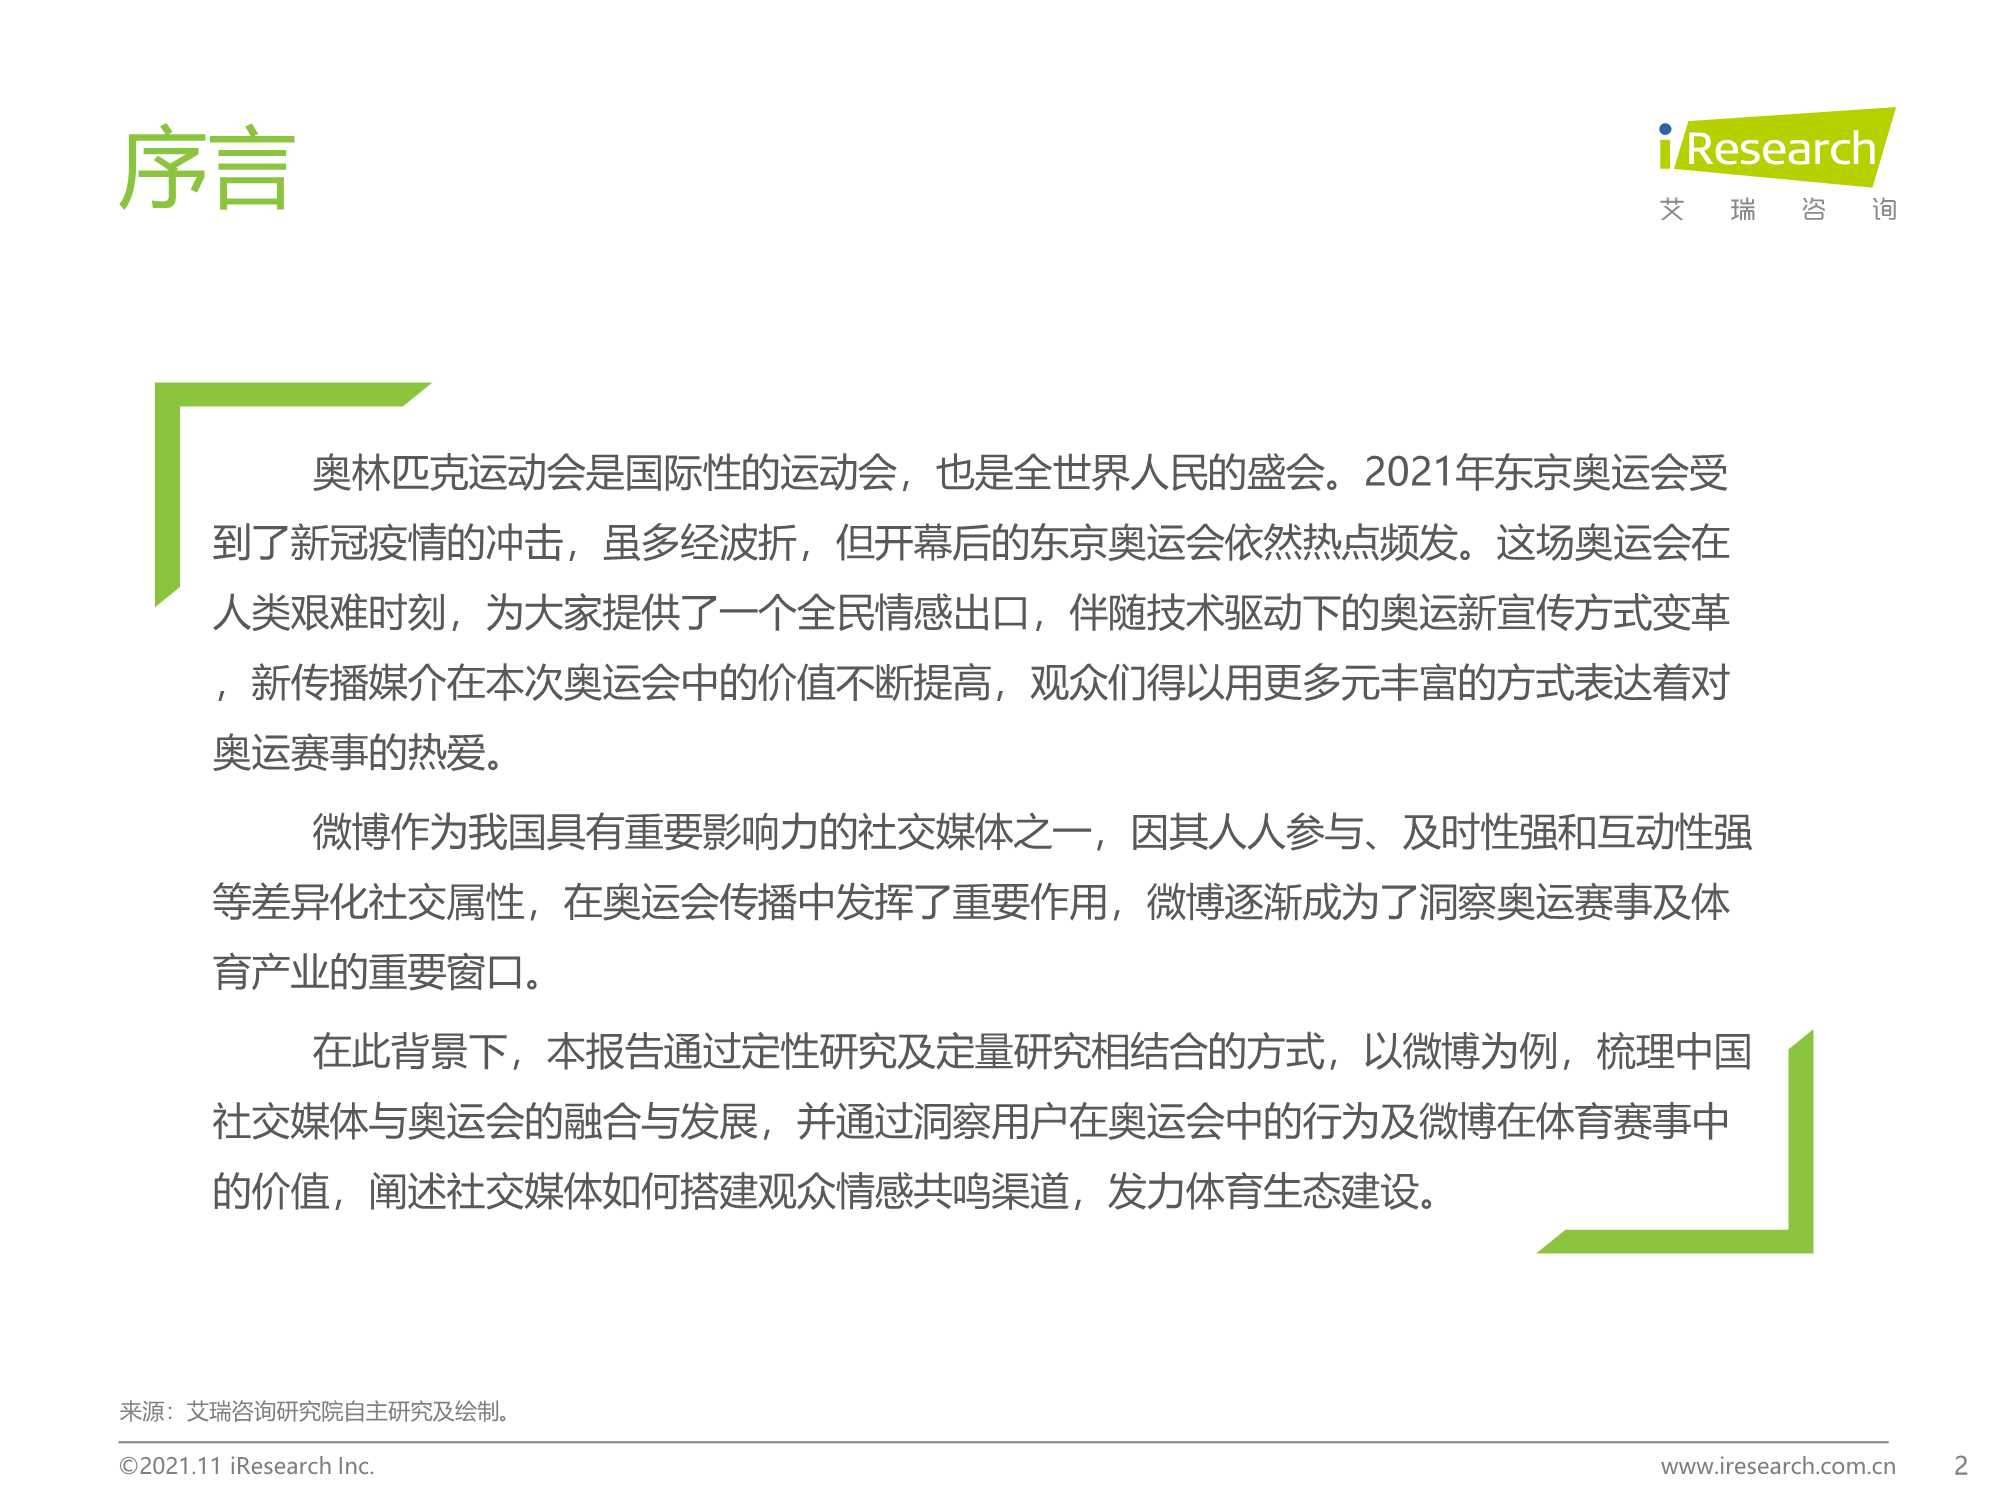 艾瑞咨询-2021年奥运期间中国社交媒体价值分析报告-以微博为例-2021.12-34页